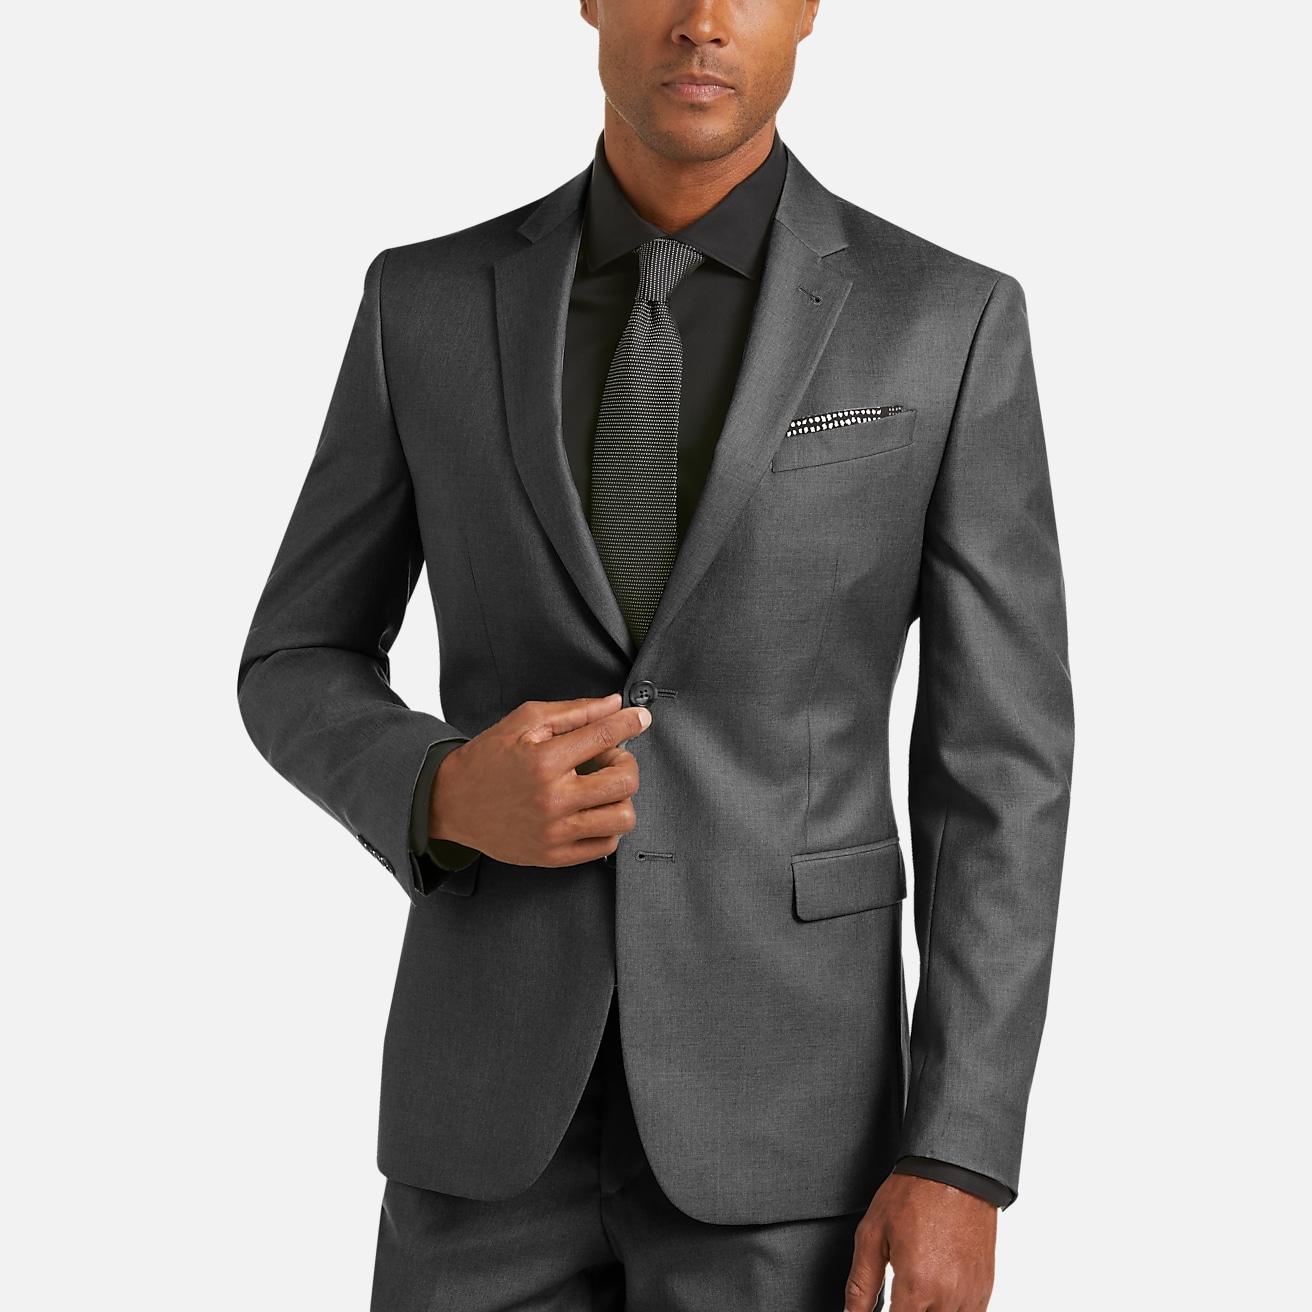 JOE Joseph Abboud Extreme Slim Fit Suit | All Sale| Men's Wearhouse